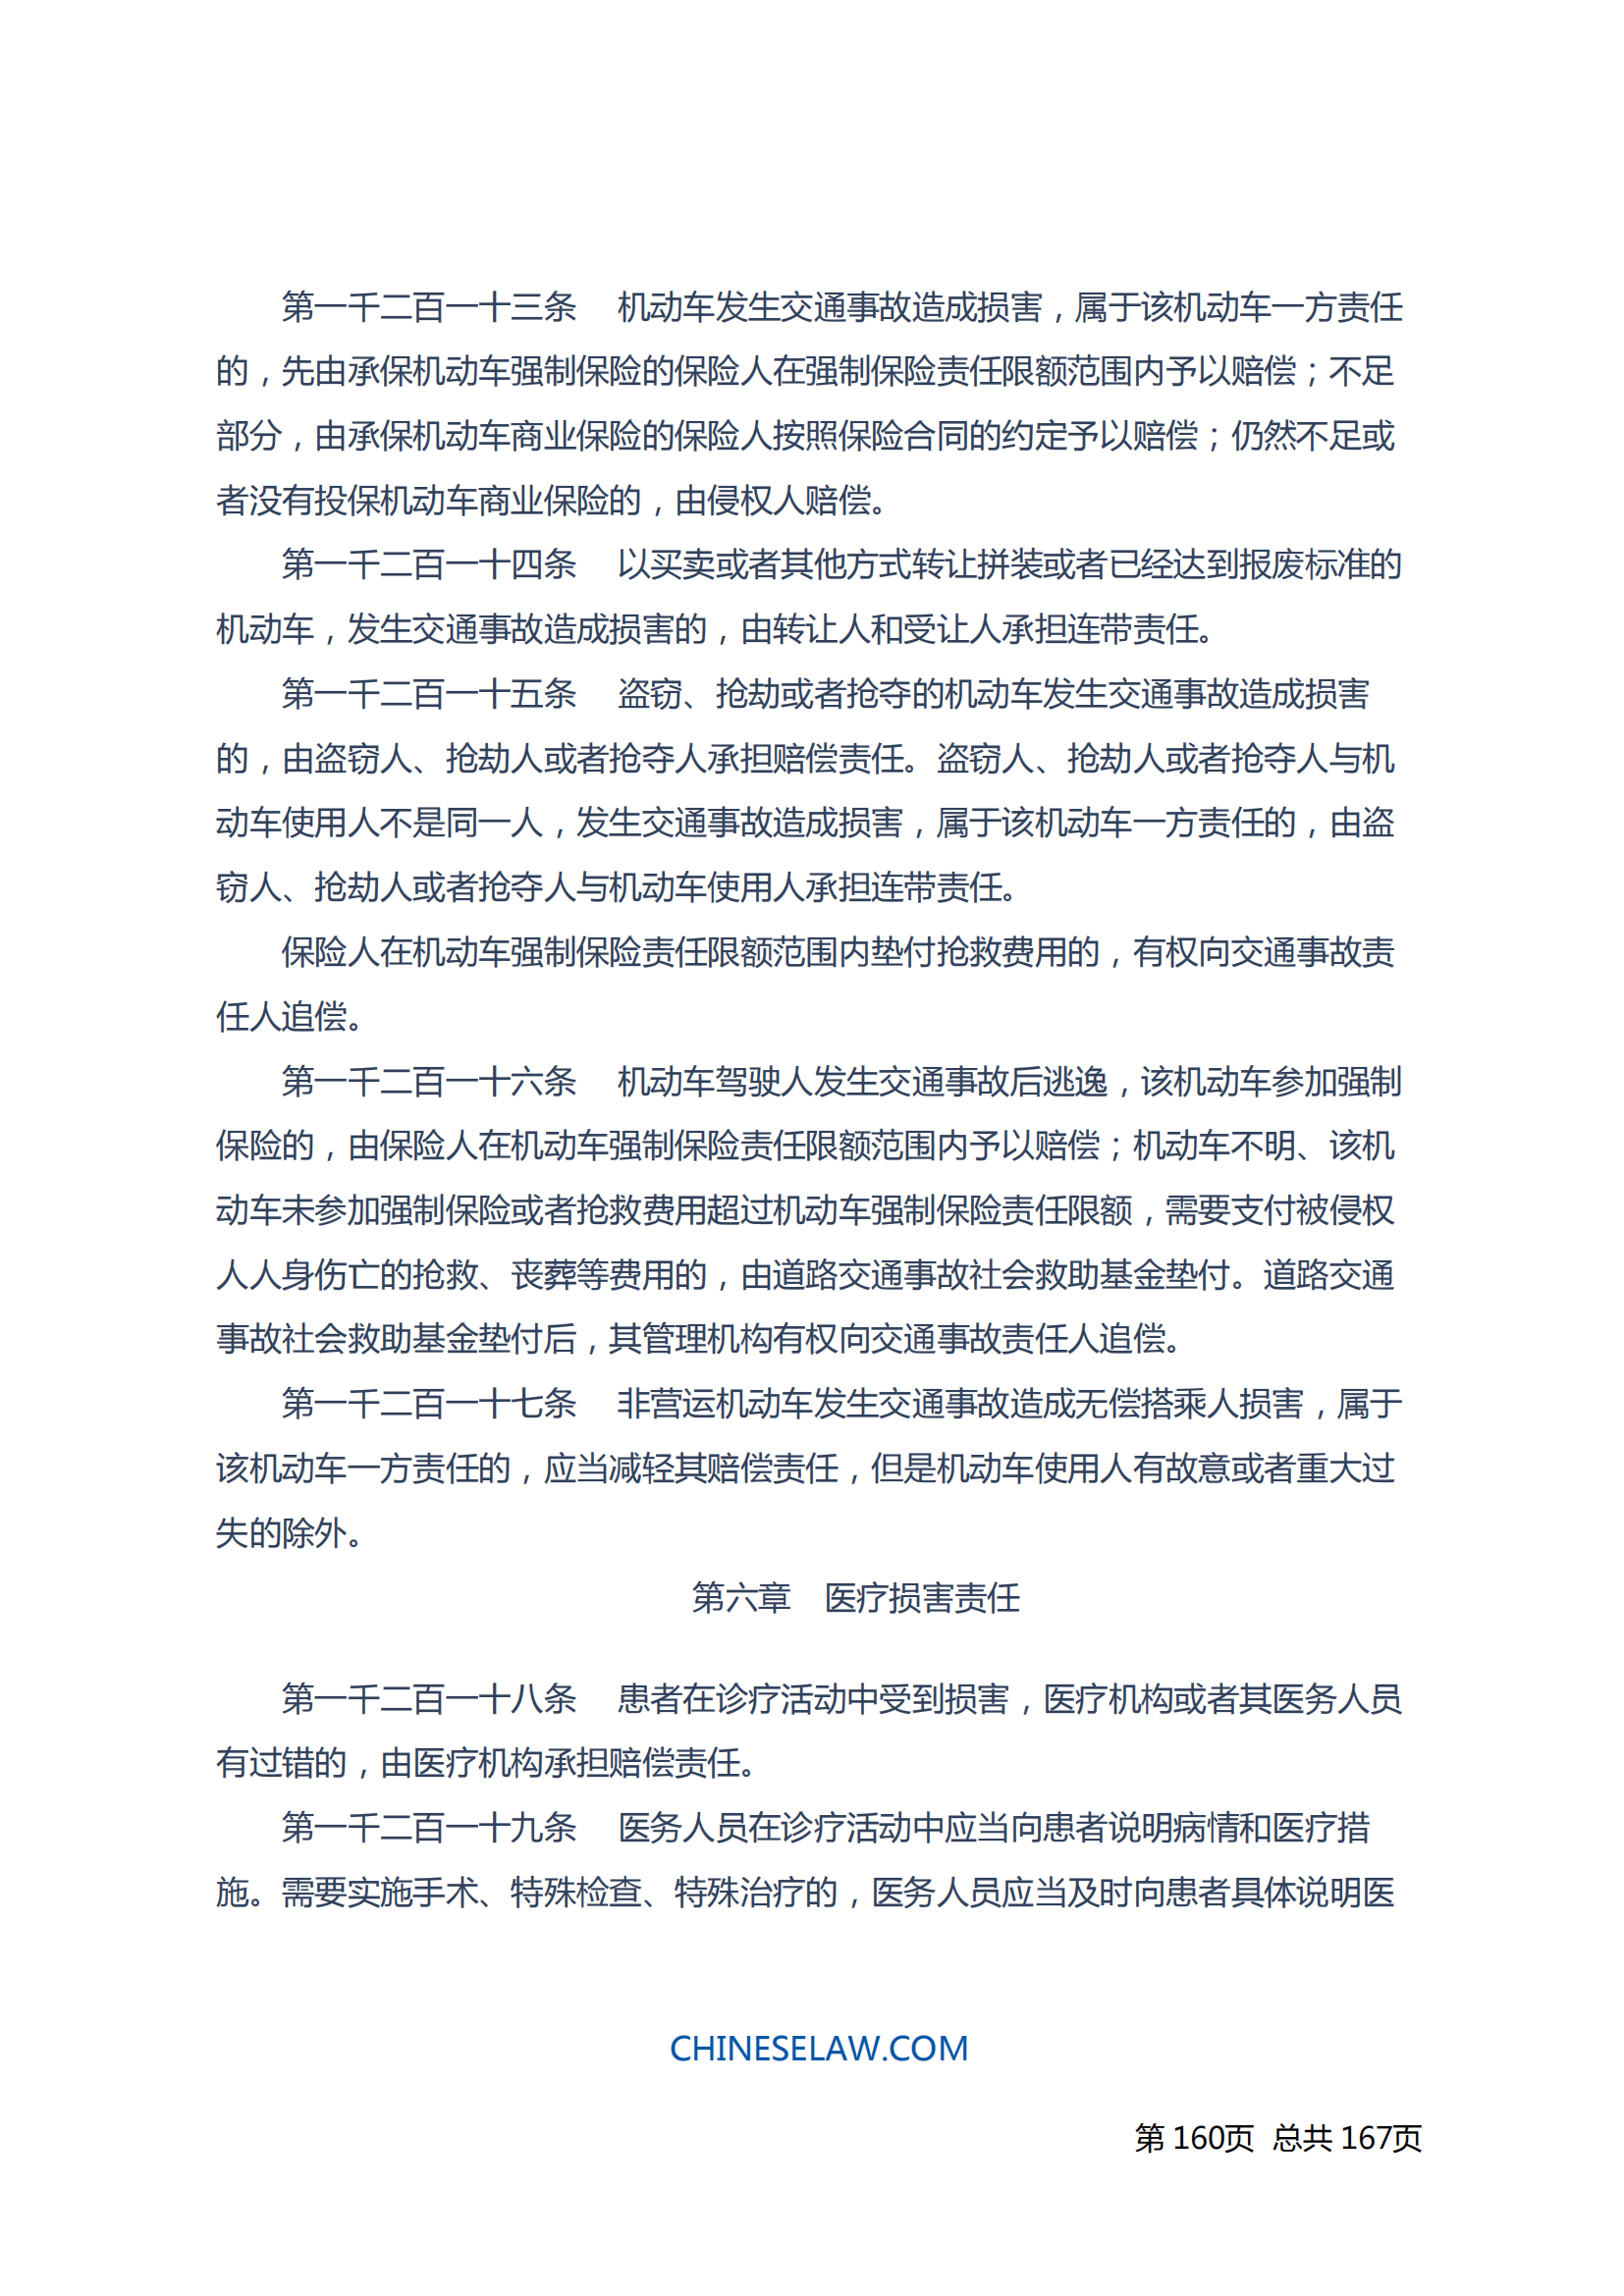 中华人民共和国民法典_159